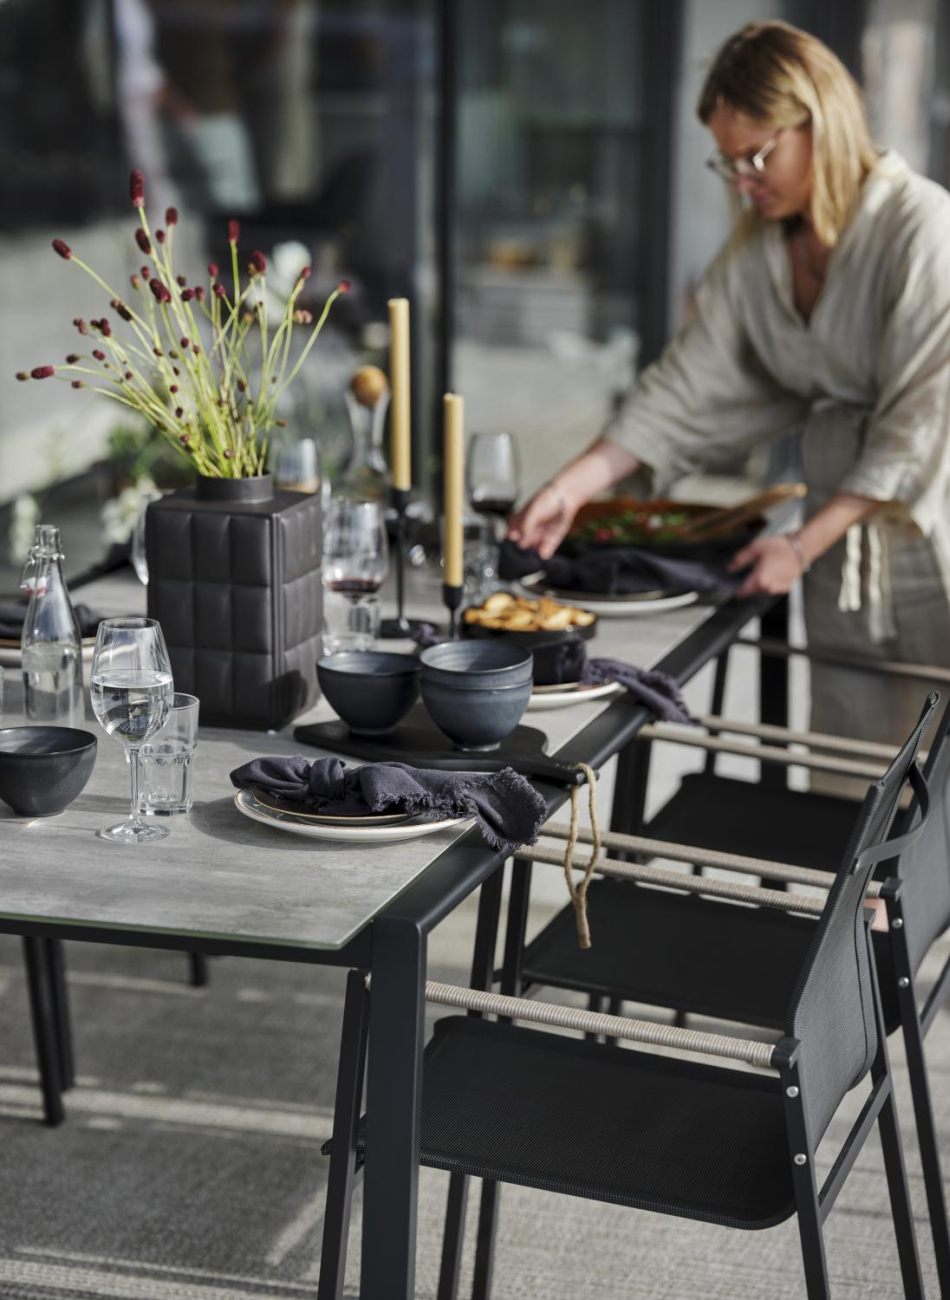 Der Gartenesstisch Lyra überzeugt mit seinem modernen Design. Gefertigt wurde die Tischplatte aus Granit und hat eine hellgraue Farbe. Das Gestell ist auch aus Metall und hat eine schwarze Farbe. Der Tisch besitzt eine Länge von 220 cm.